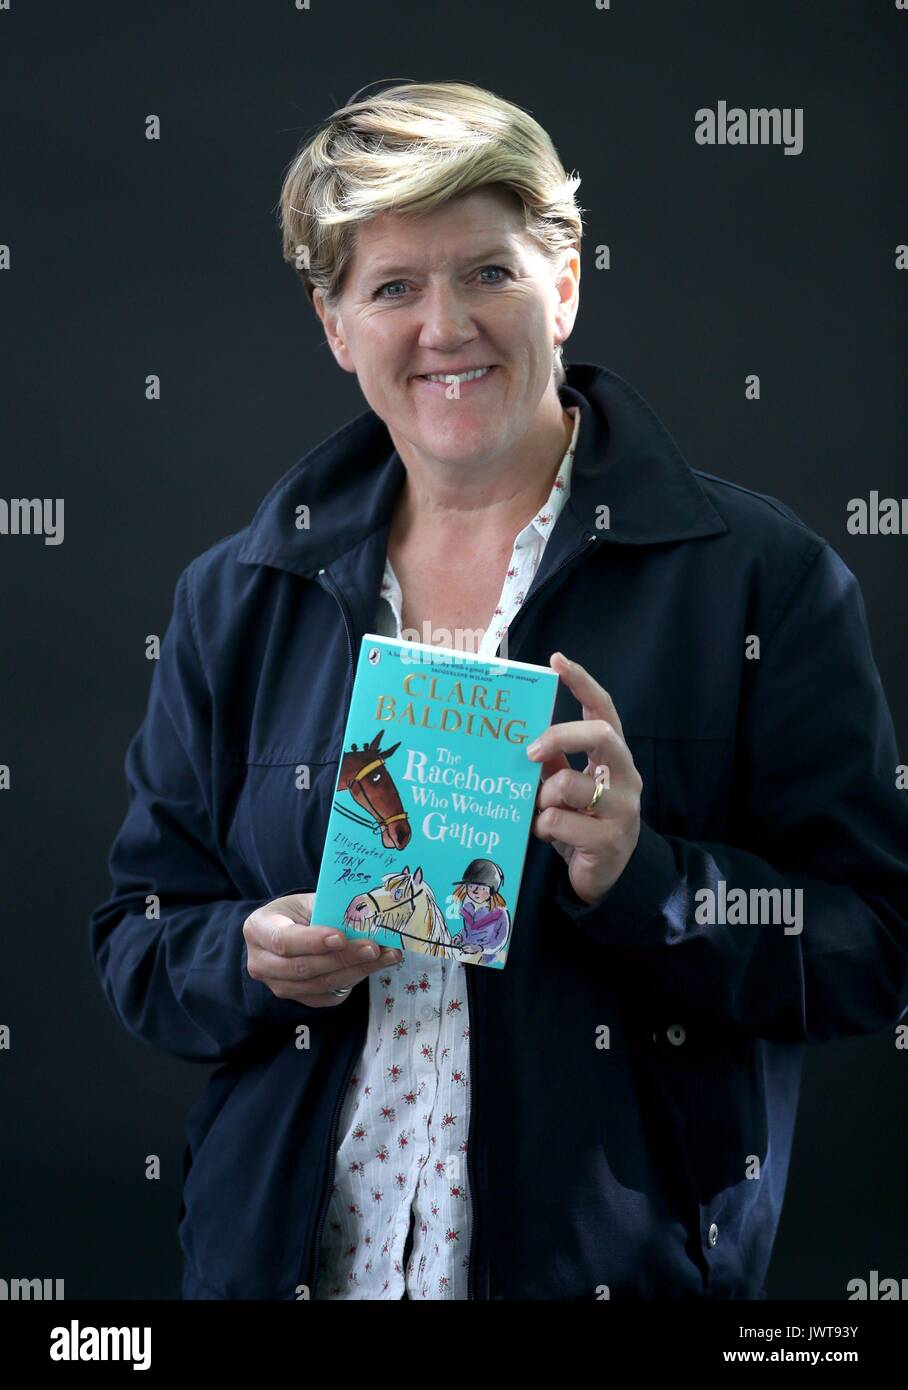 Auteur et communicateur Clare Balding au Edinburgh International Book Festival 2017 où elle a présenté son premier livre pour enfants Le cheval qui ne serait pas au galop. Banque D'Images